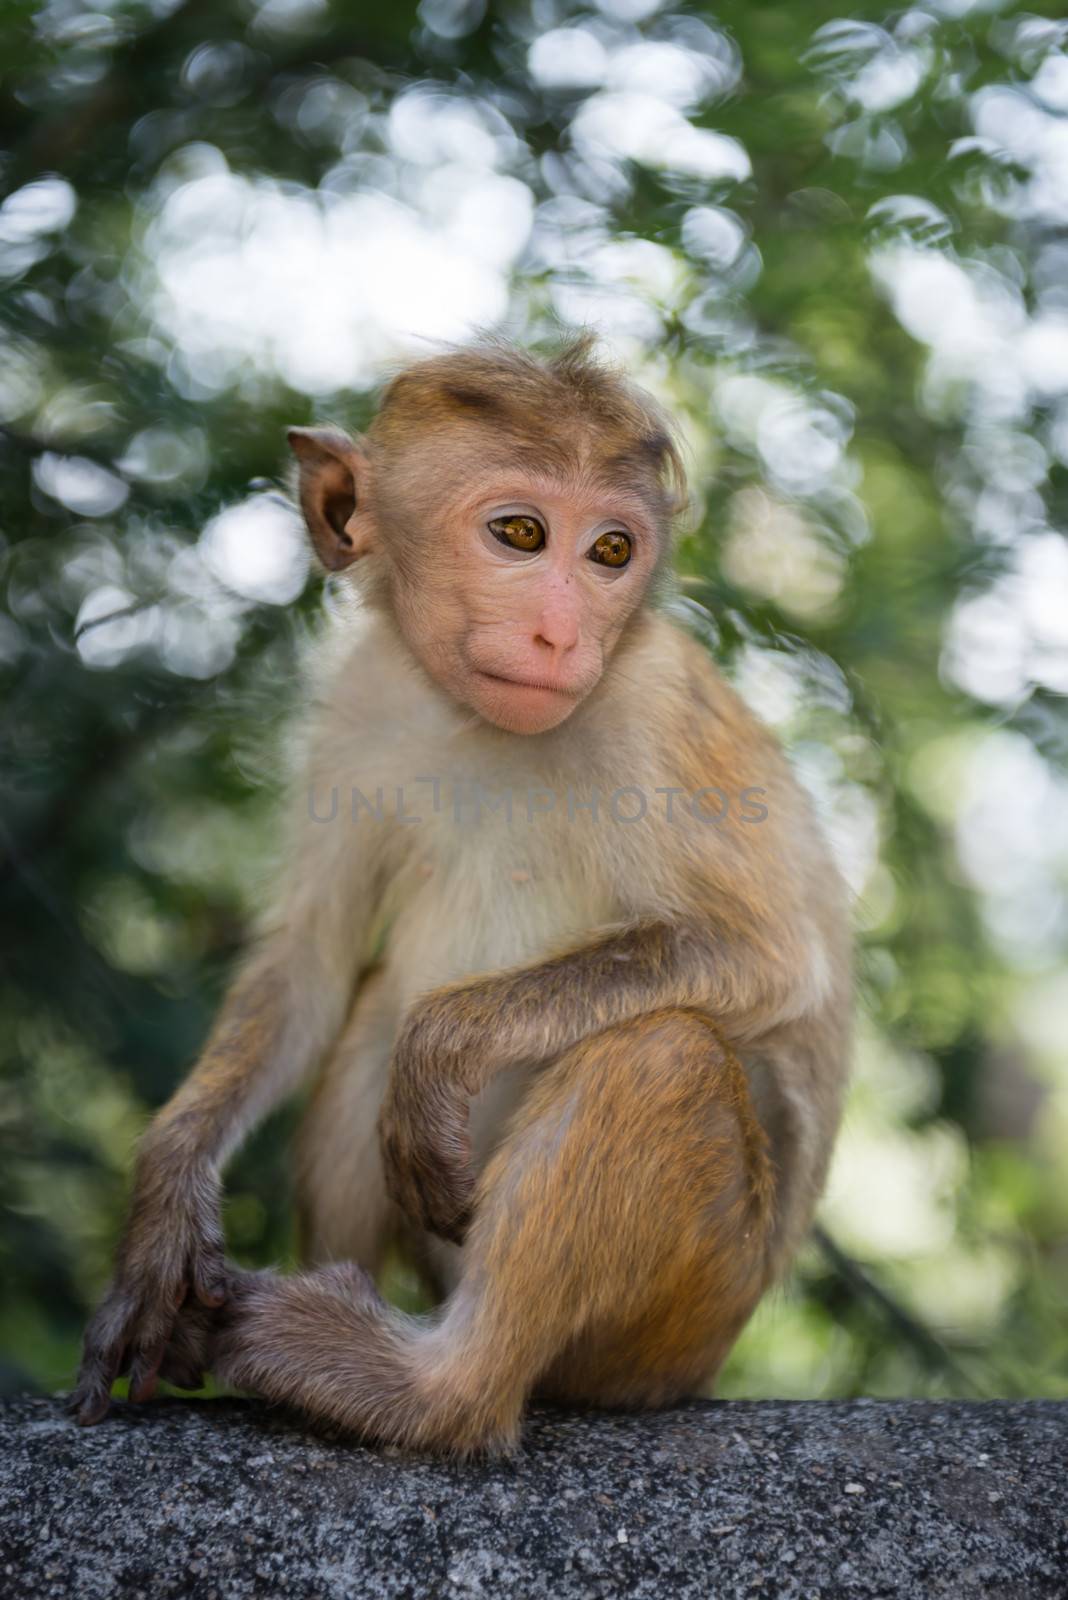 Thoughtful young monkey by iryna_rasko